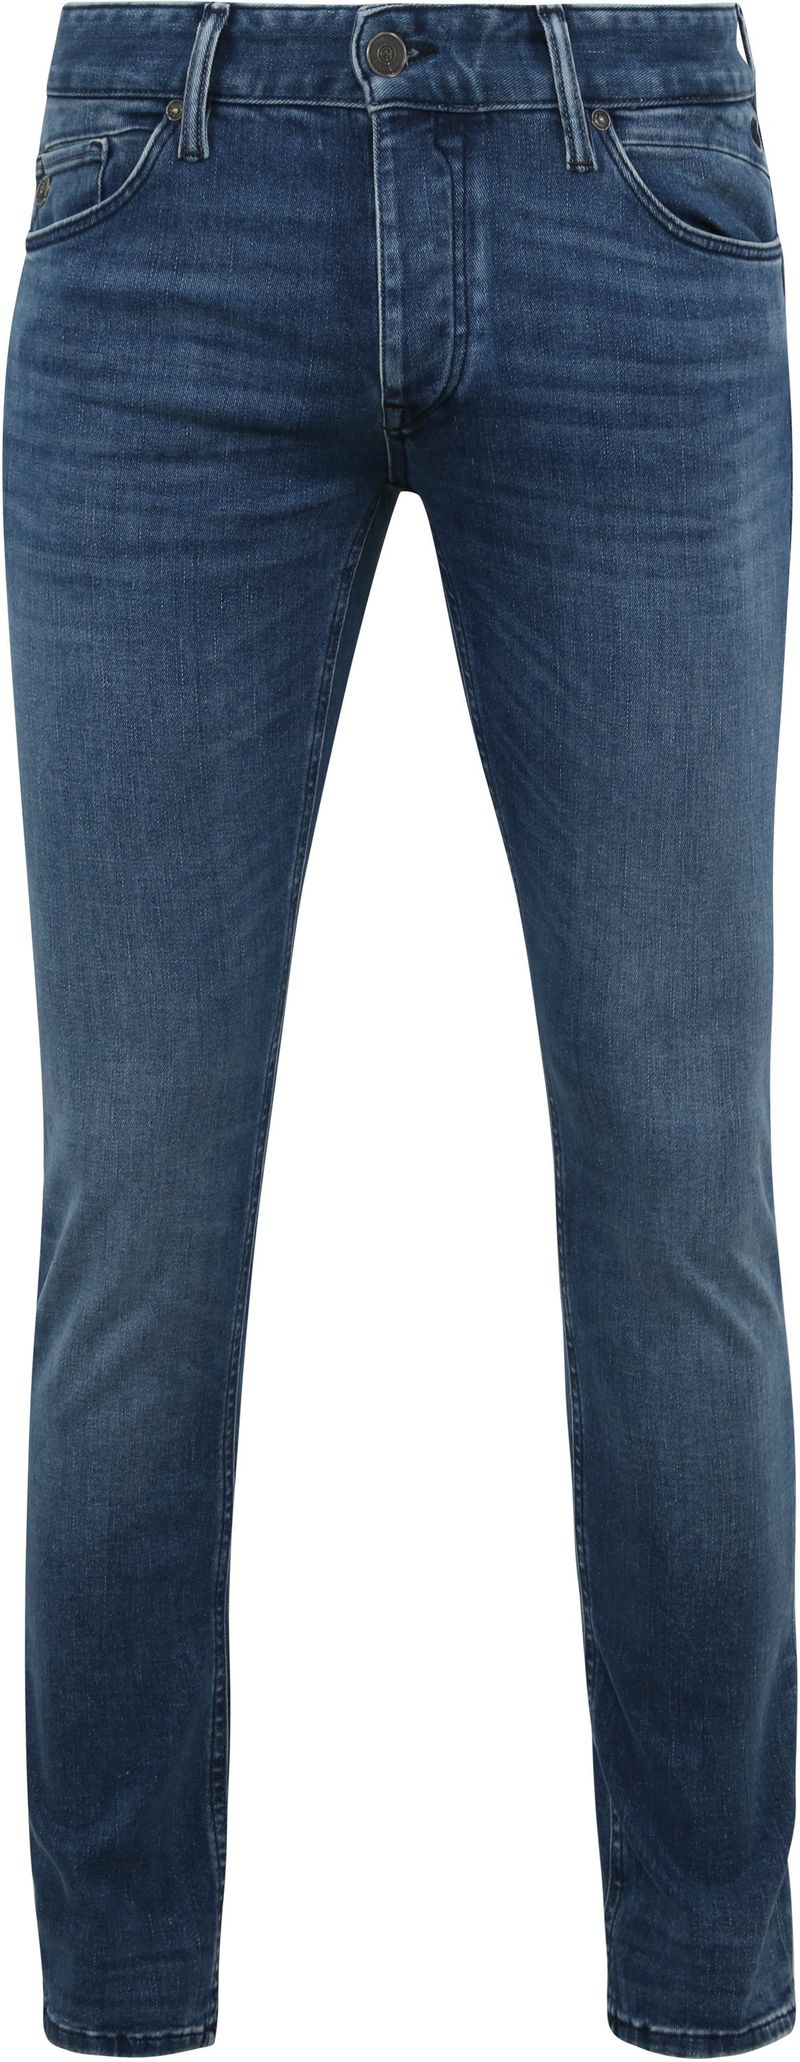 Cast Iron Riser Jeans Blau IIW - Größe W 36 - L 34 von Cast Iron